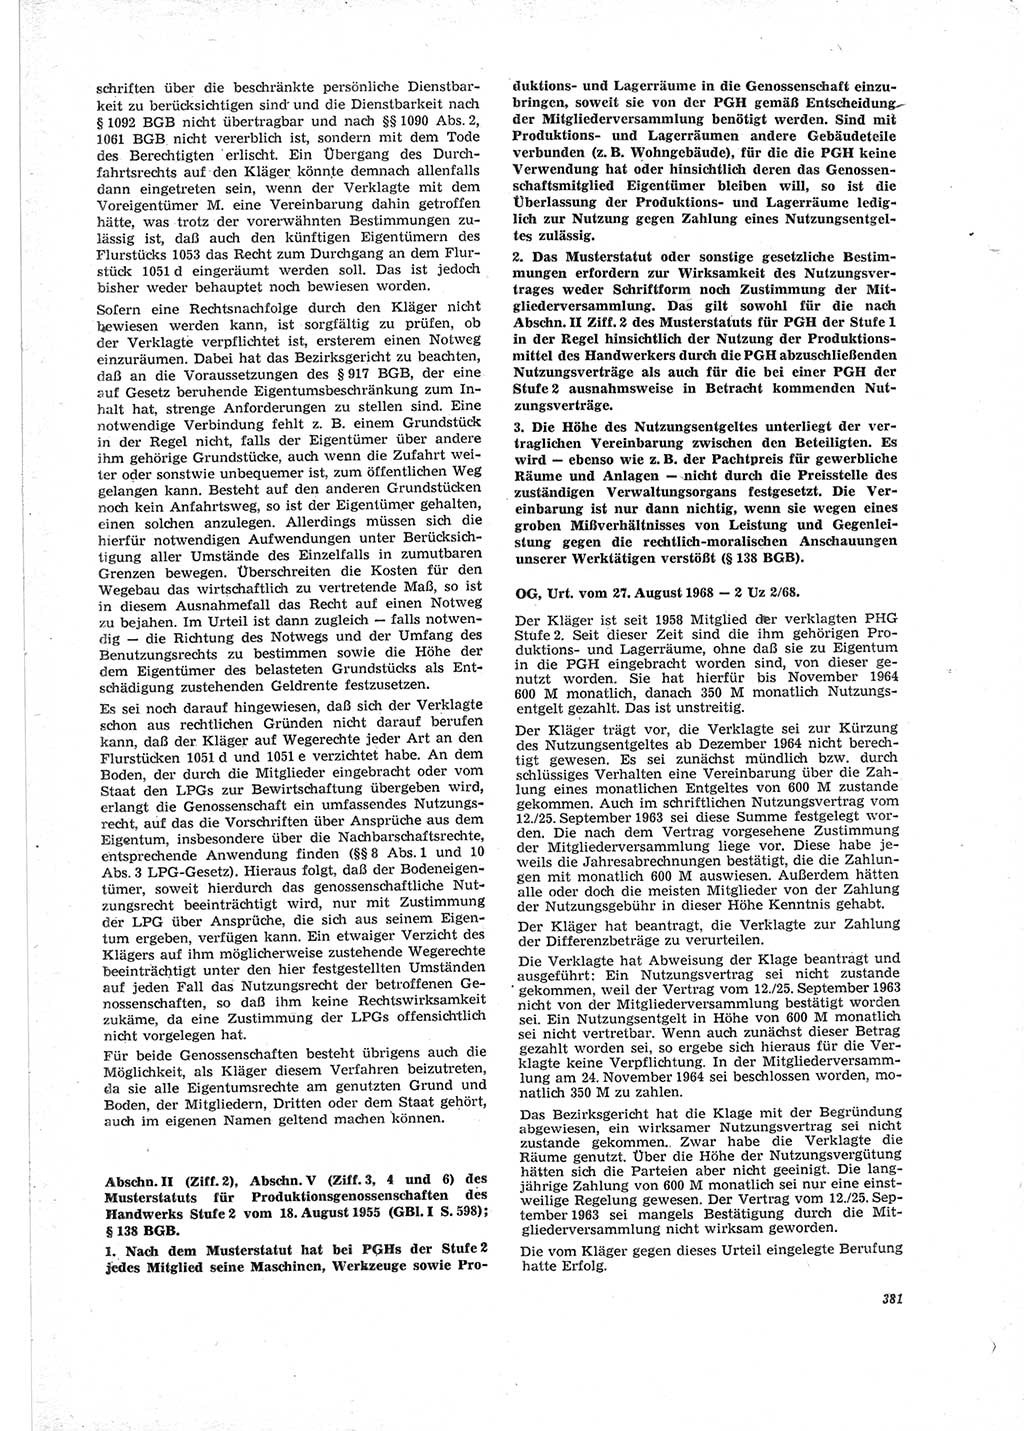 Neue Justiz (NJ), Zeitschrift für Recht und Rechtswissenschaft [Deutsche Demokratische Republik (DDR)], 23. Jahrgang 1969, Seite 381 (NJ DDR 1969, S. 381)